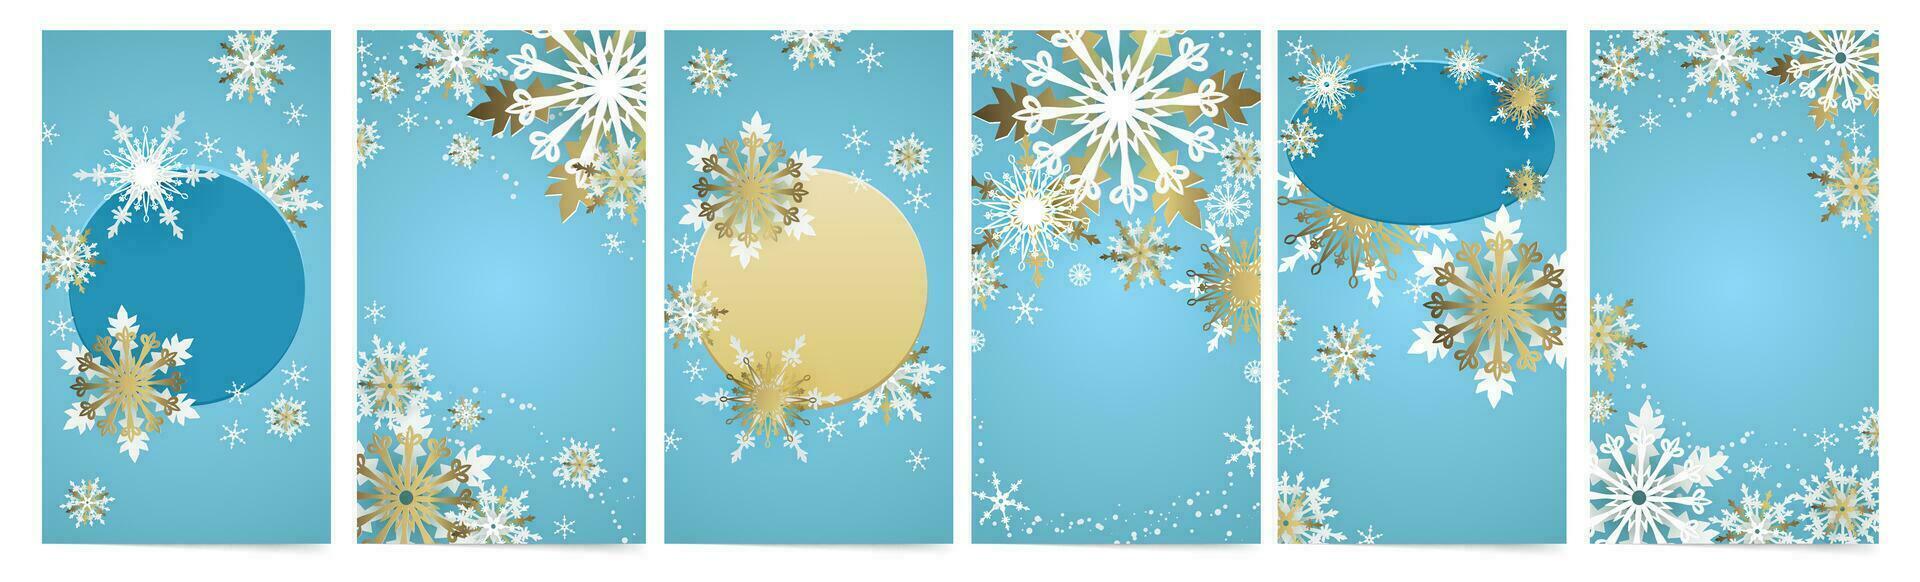 winter vakantie achtergronden voor sociaal media verhalen, berichten en verkoop Sjablonen. blauw Kerstmis banners met gouden sneeuwvlokken. vector